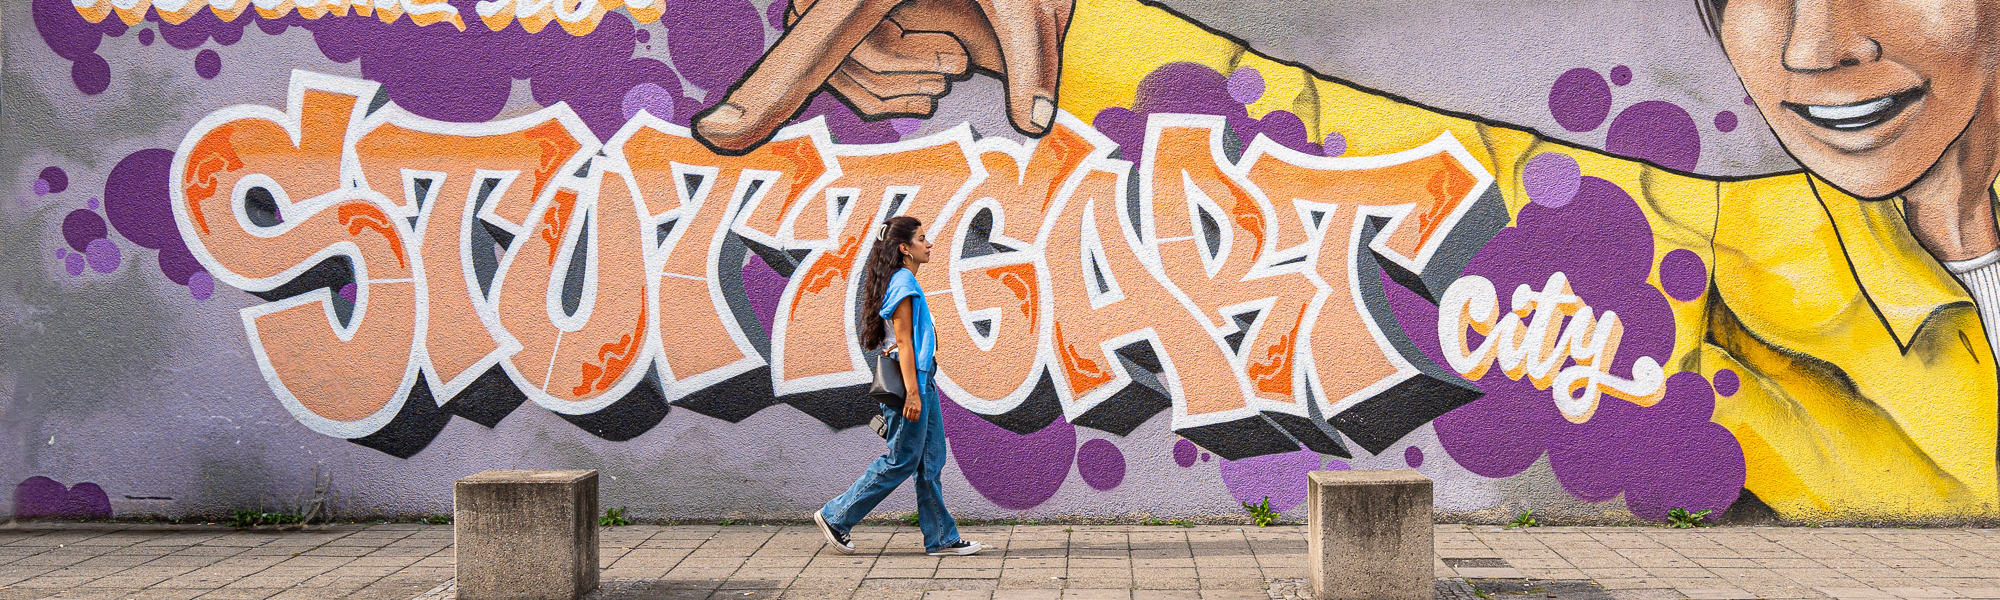 Graffiti mit der Schrift "Welcome to Stuttgart City"